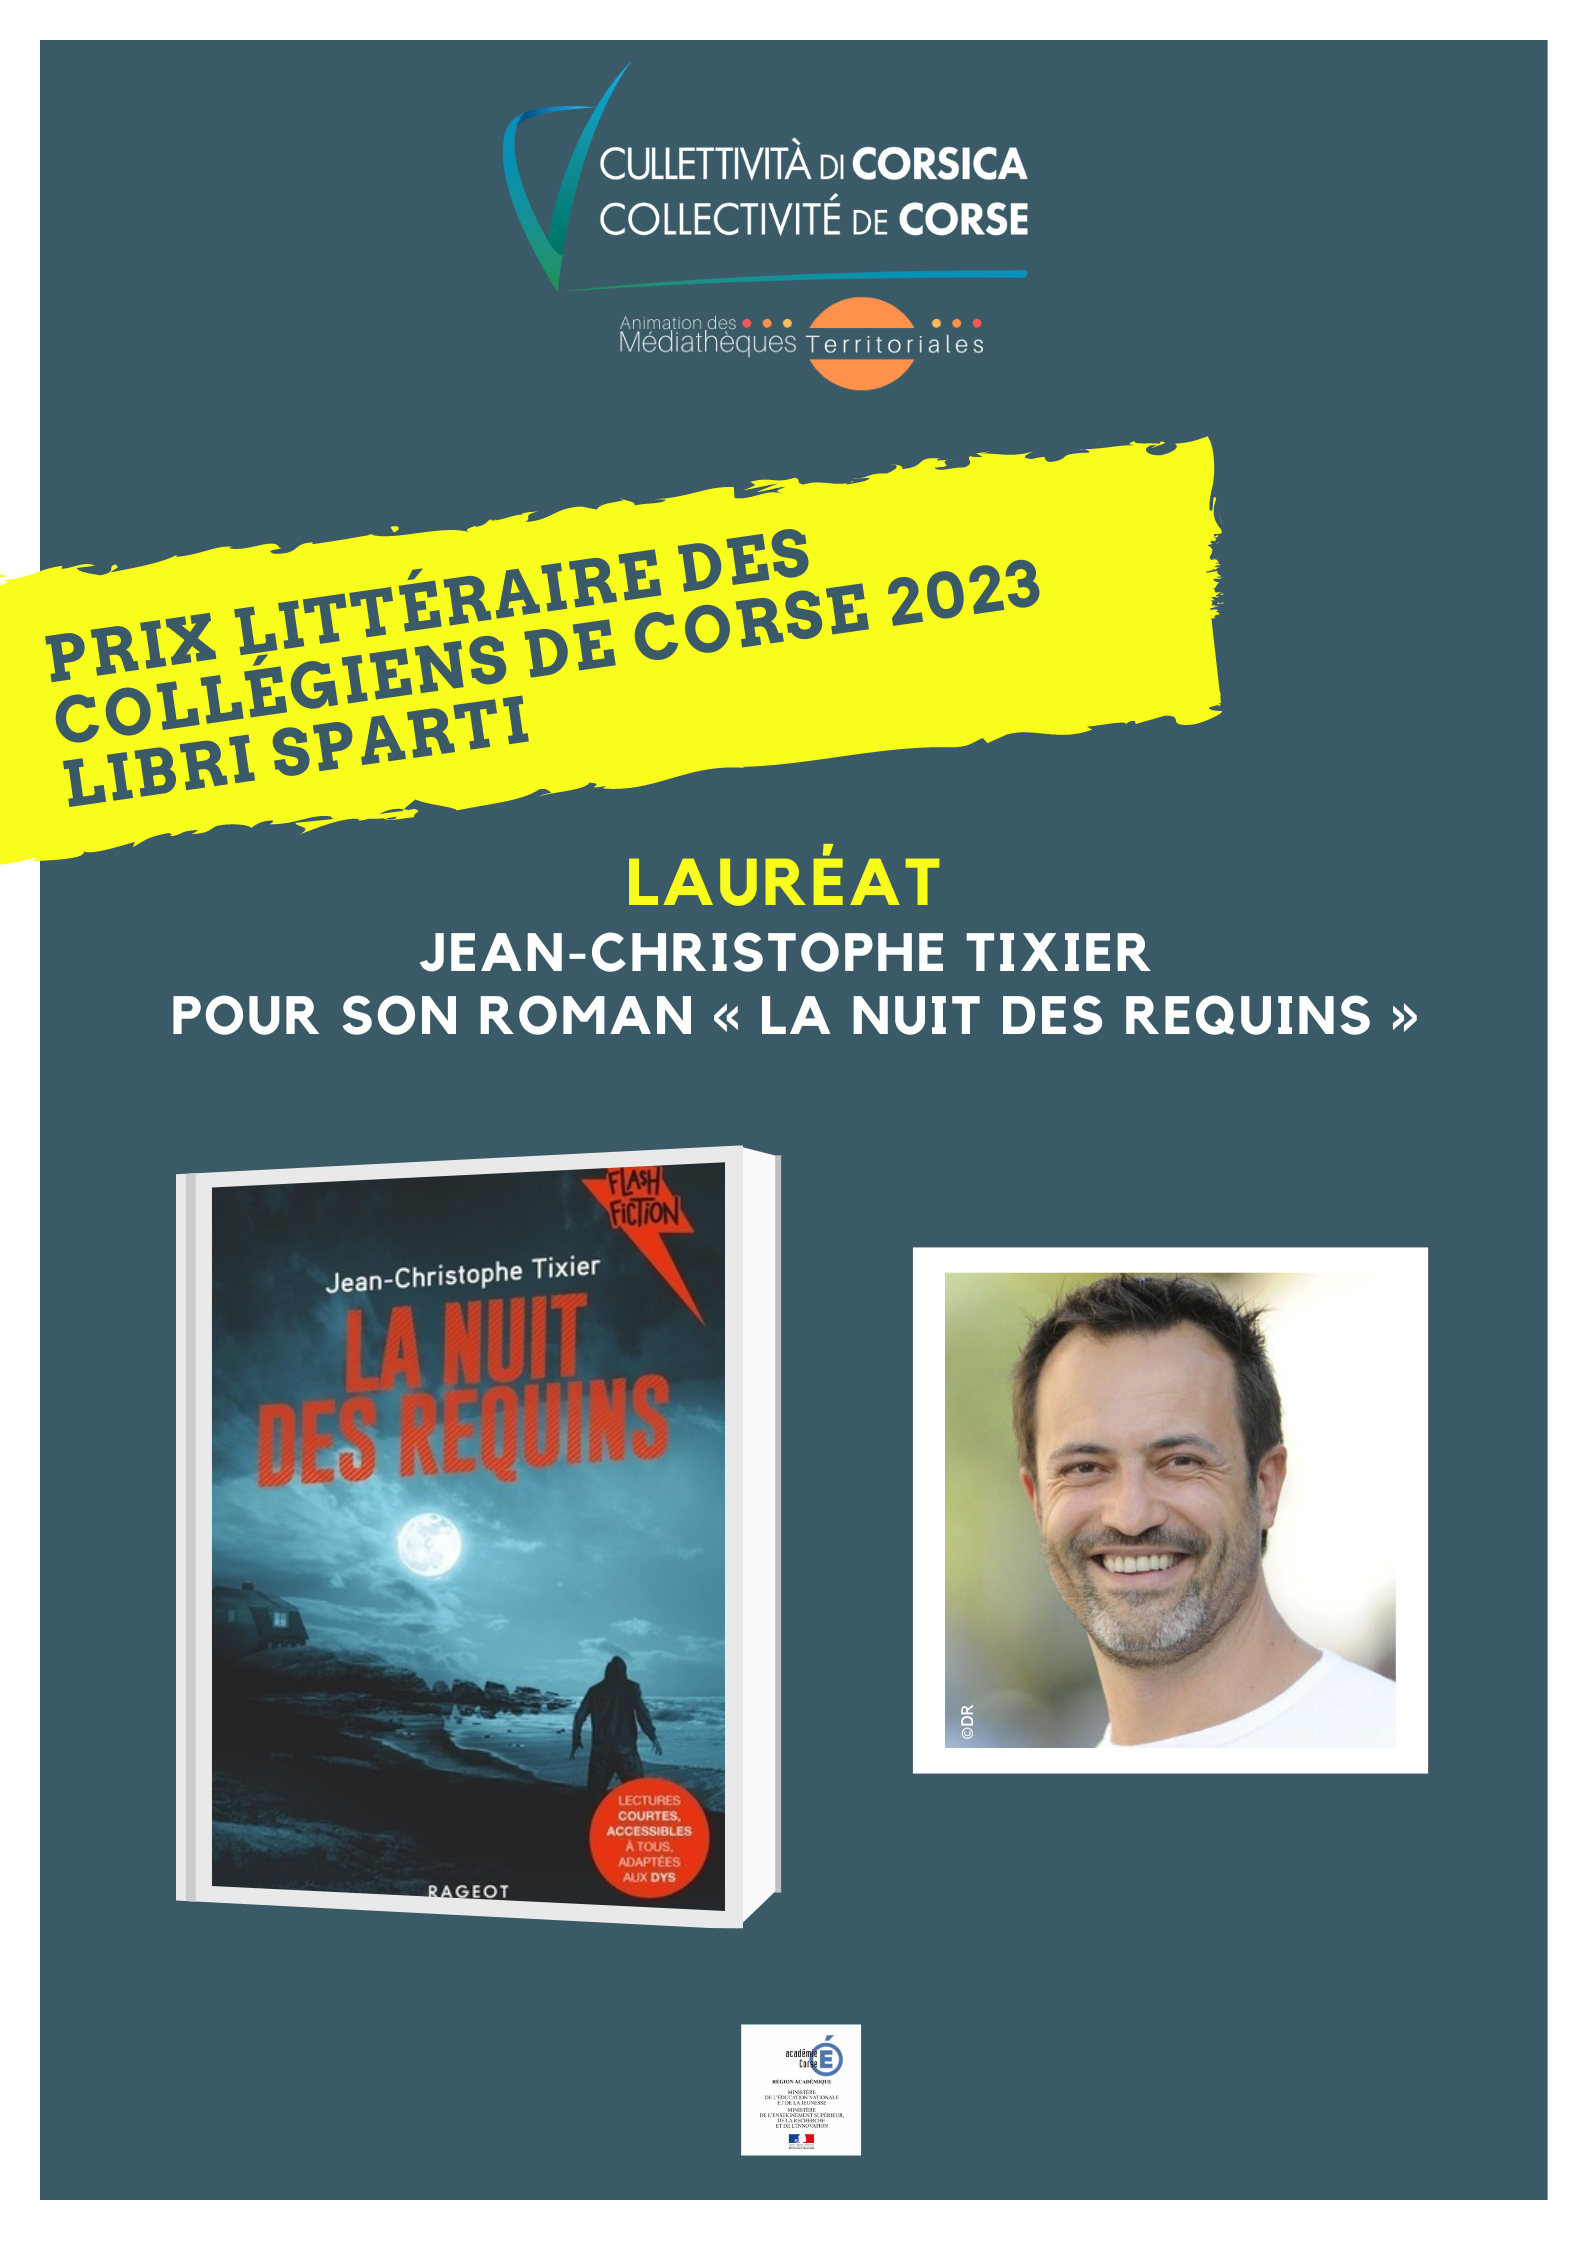 Lauréat du Prix littéraire des collégiens de Corse "Libri Sparti" - Année scolaire 2022/2023